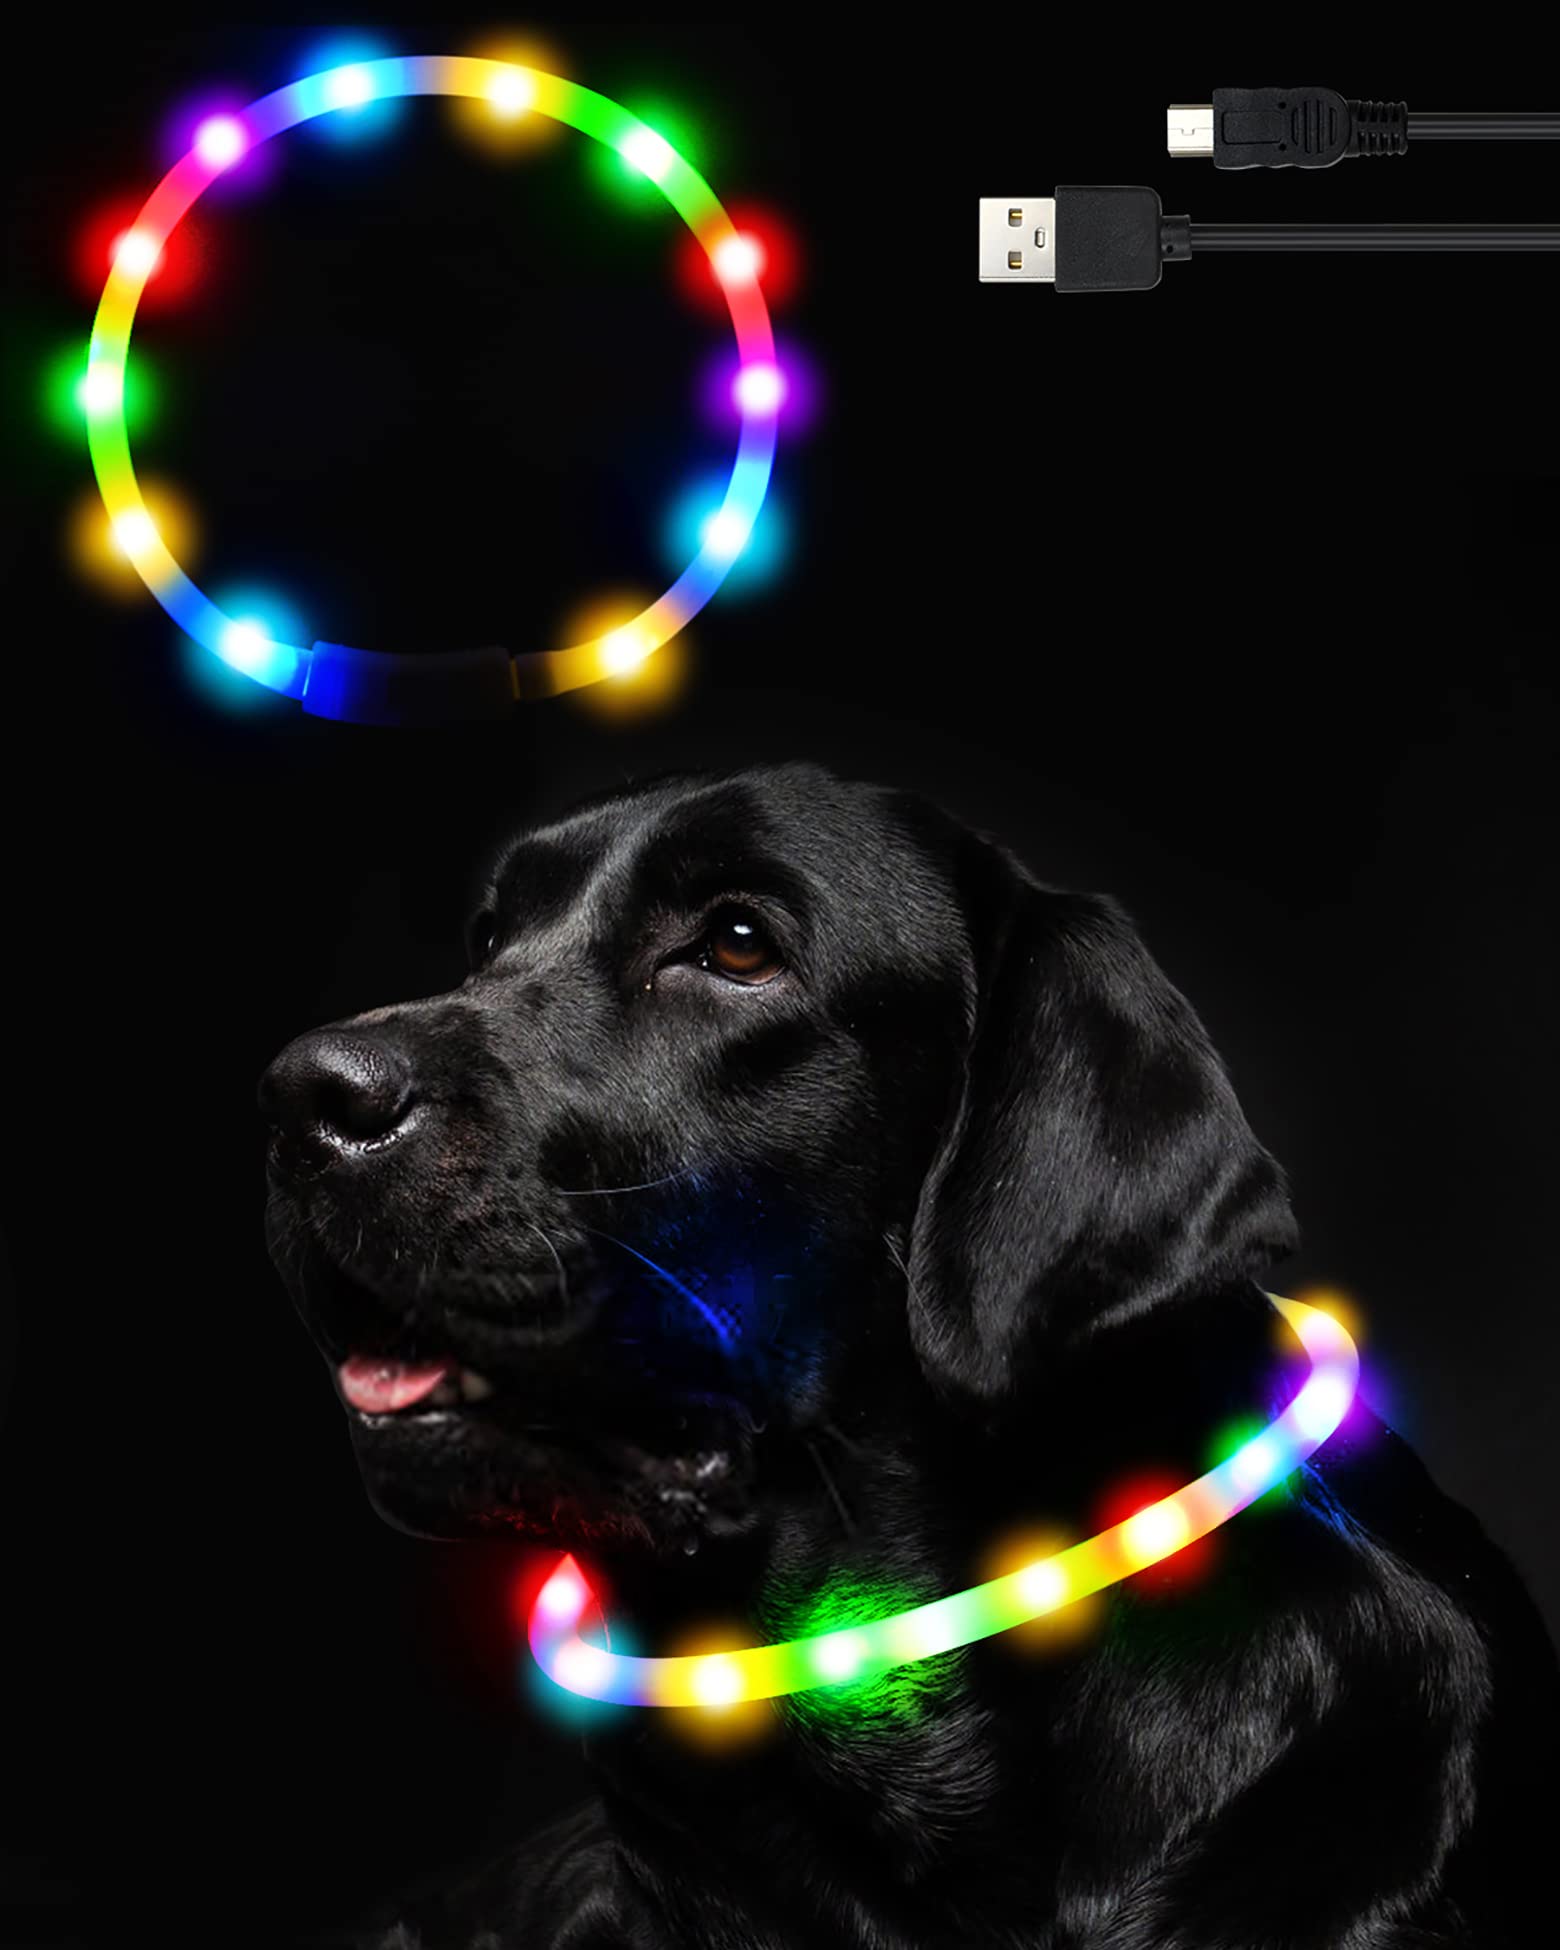 商品情報商品の説明主な仕様 ?【高い可視性で安全】光る首輪は12個の高輝度LEDを採用、400m先から視認することができ犬の夜の散歩中の事故防止に安心です。br?【長さ調節可能】最大70cmまで、ハサミで好きなサイズにカットして長さを調節することができます。小型犬、中型犬、大型犬、ペットに対応できます。br?【超持続時間】2時間でフルに充電して毎日1時間で一週間のお散歩が満足できます。点灯時間は、カラーと点灯モードにより異なります。ペットライトは4つの点灯モードをスイッチ操作で簡単に切り替え可能です。定常照明：持続時間約8h。高速点滅、低速点滅、光が流れ：持続時間約12h。br?【雨の日でも安心防水性】犬 首輪 光るは防水性のため、雨の日のお散歩にもお使いいただけます。※生活防水レベルです。お風呂やプールには入れないでください。br?【やわらかい素材&ブランド保証】犬首輪ライトはやわらかいシリコン製のチューブでできています。首にはめても痛くならず安心です。また、小さく折りたたんでバッグに入れておくにも便利です。商品にご満足いただけない場合、お買い上げから31日間、無料で返品*交換を受け付けております。安心してお買い求めいただけます。